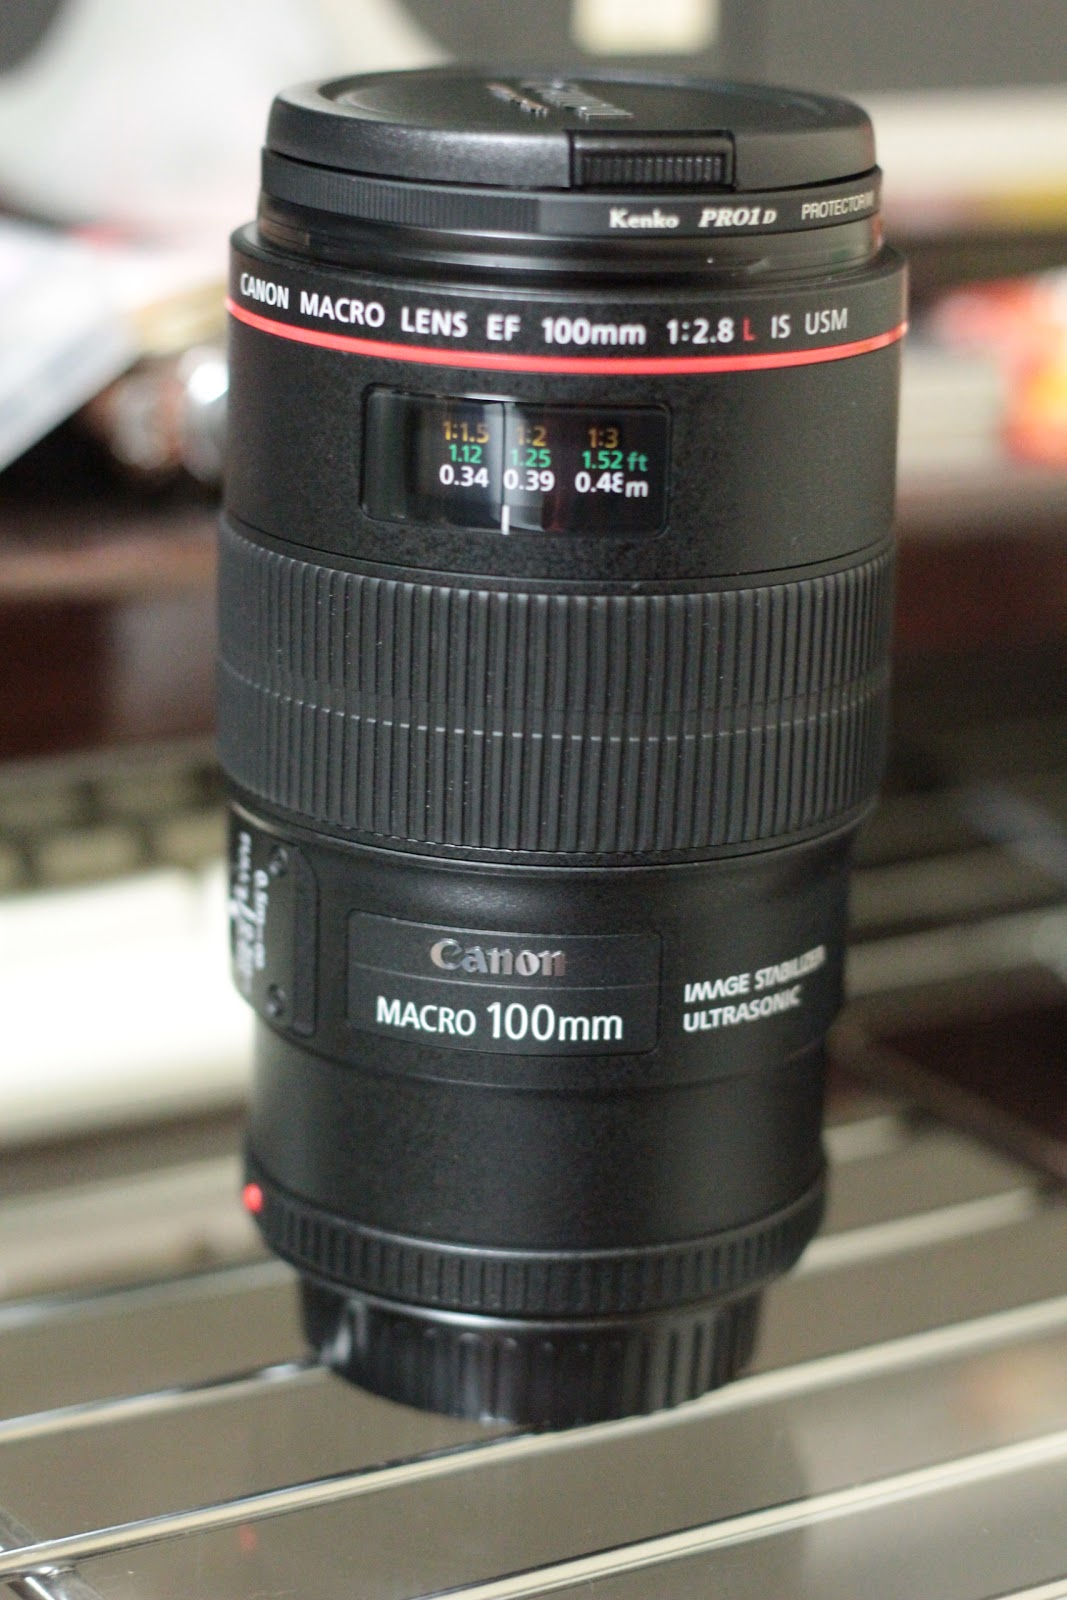 のほだら: レンズ EF100mm F2.8Lマクロ IS USM